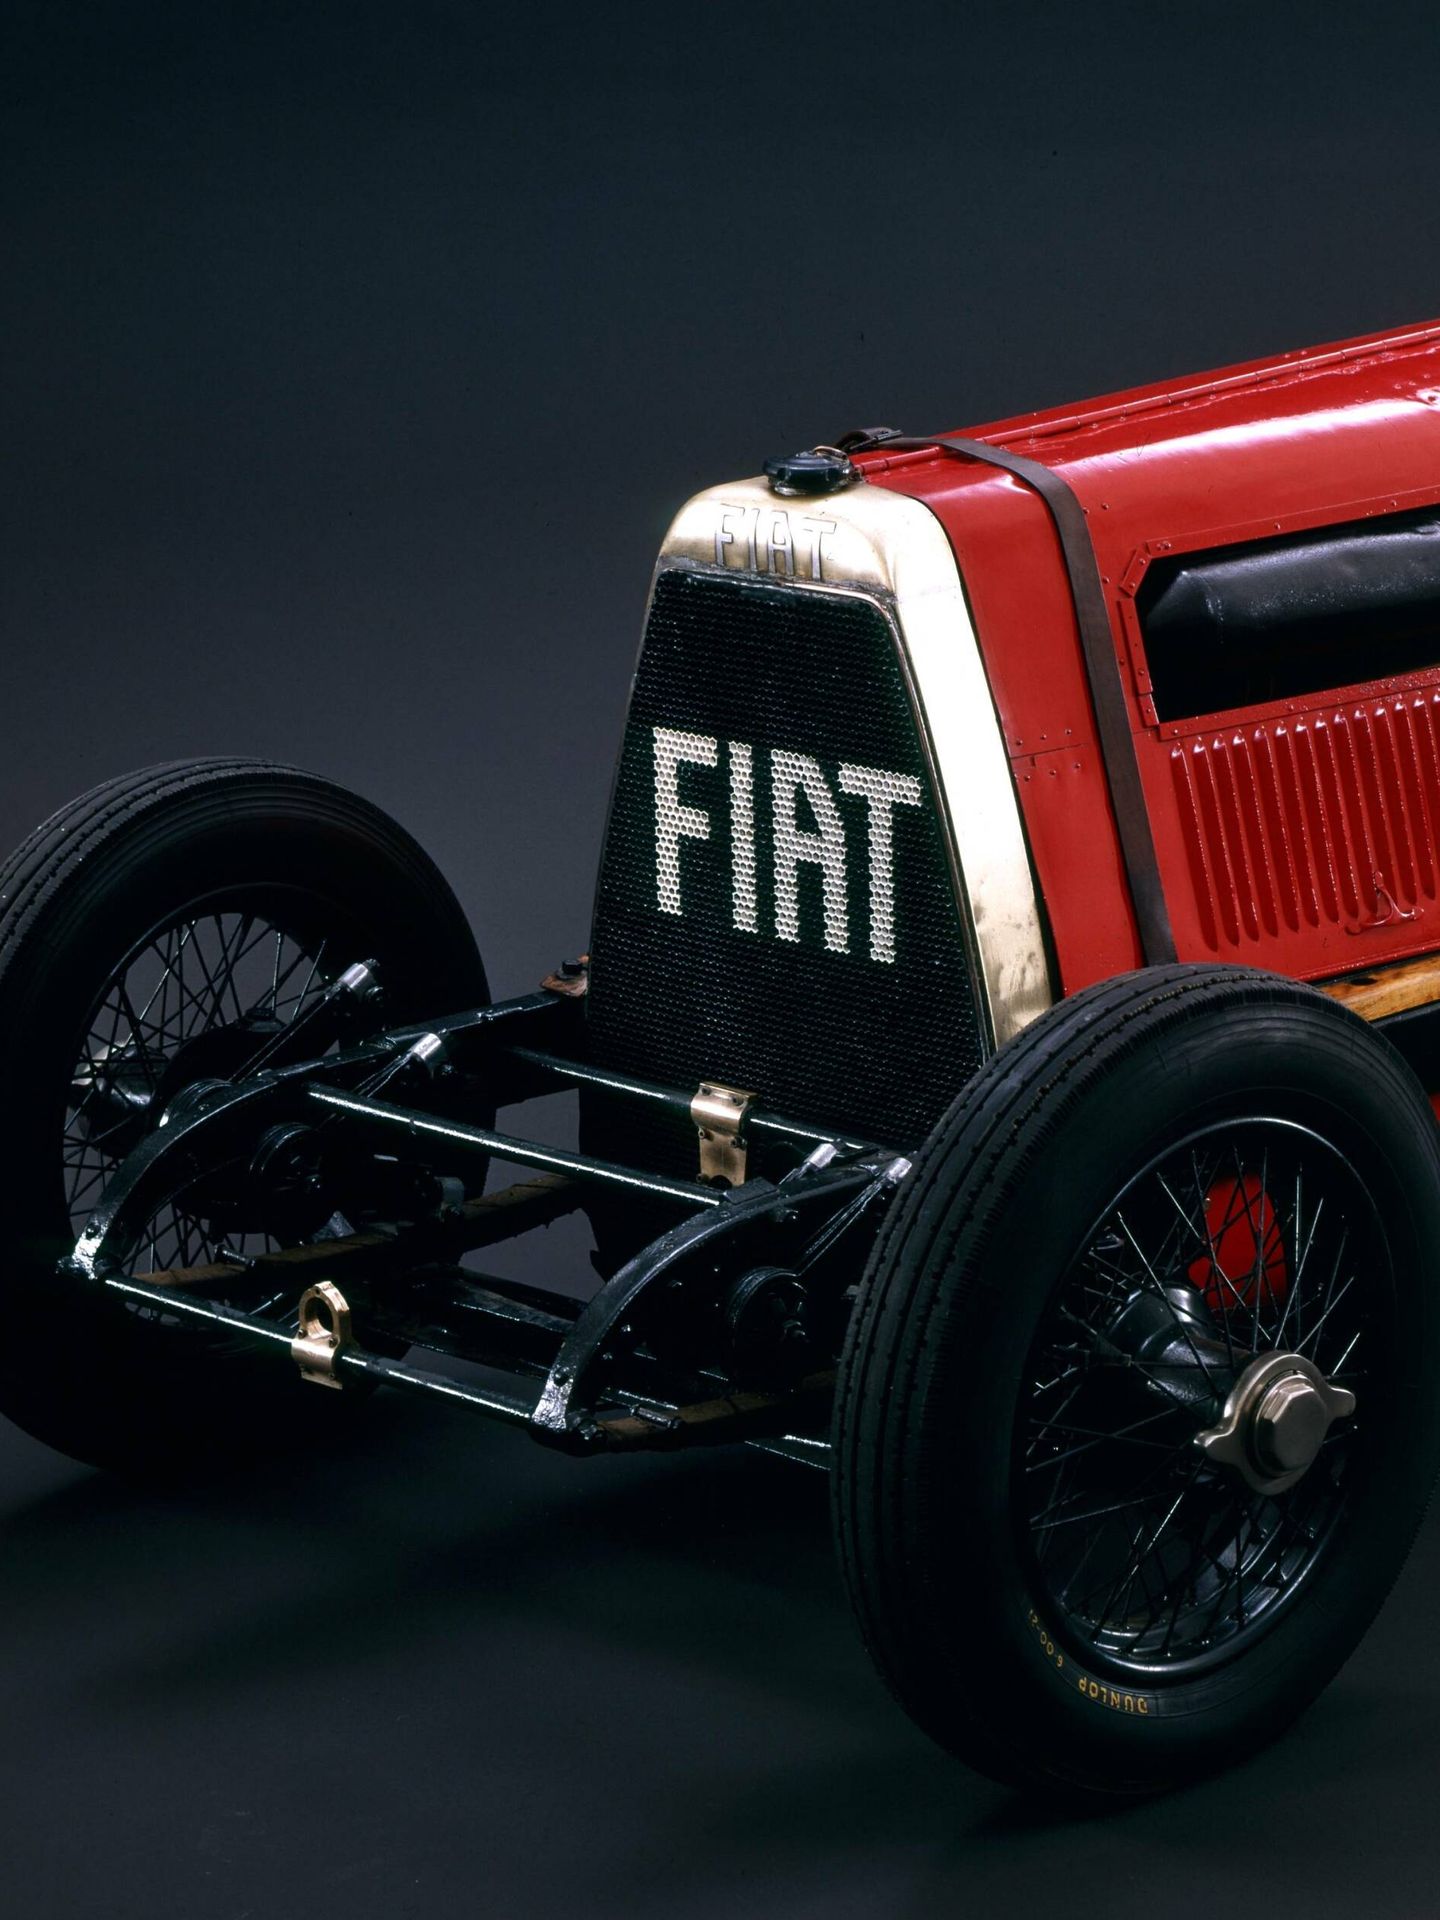 El modelo sobre el que se basaba el Mefistofele era un Fiat SB4 de 1907, un modelo de competición.